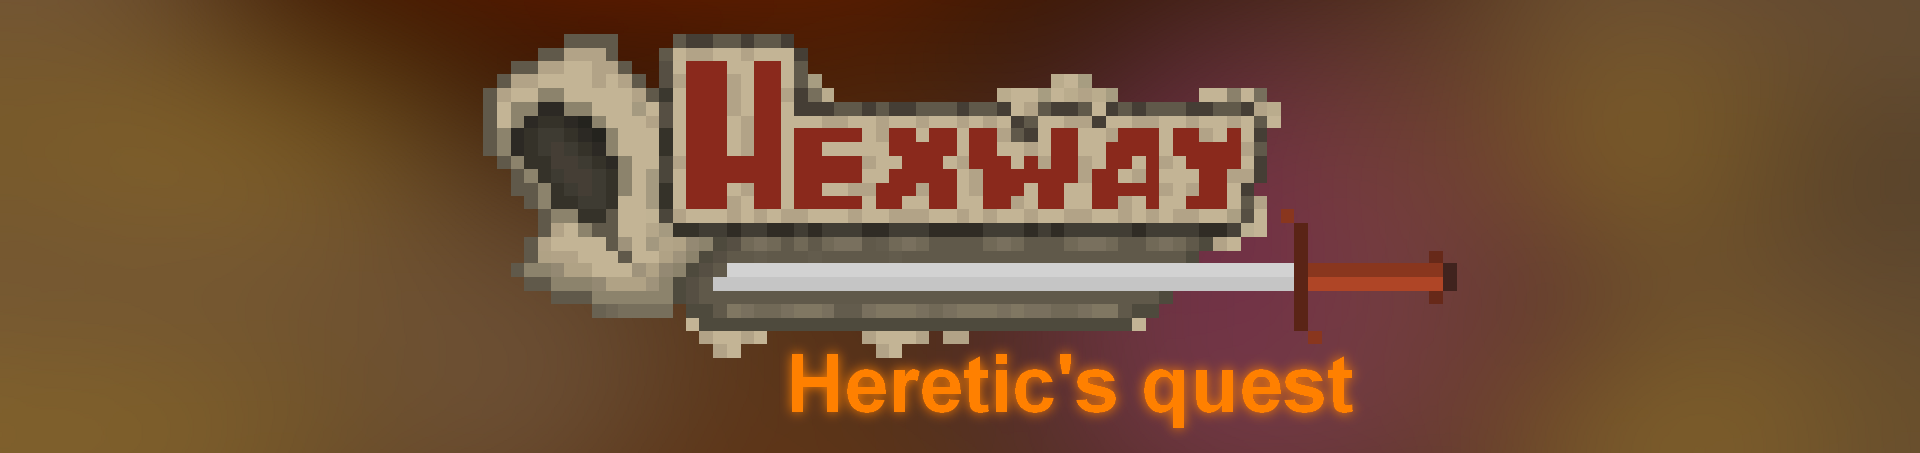 Hexway: Heretic's quest